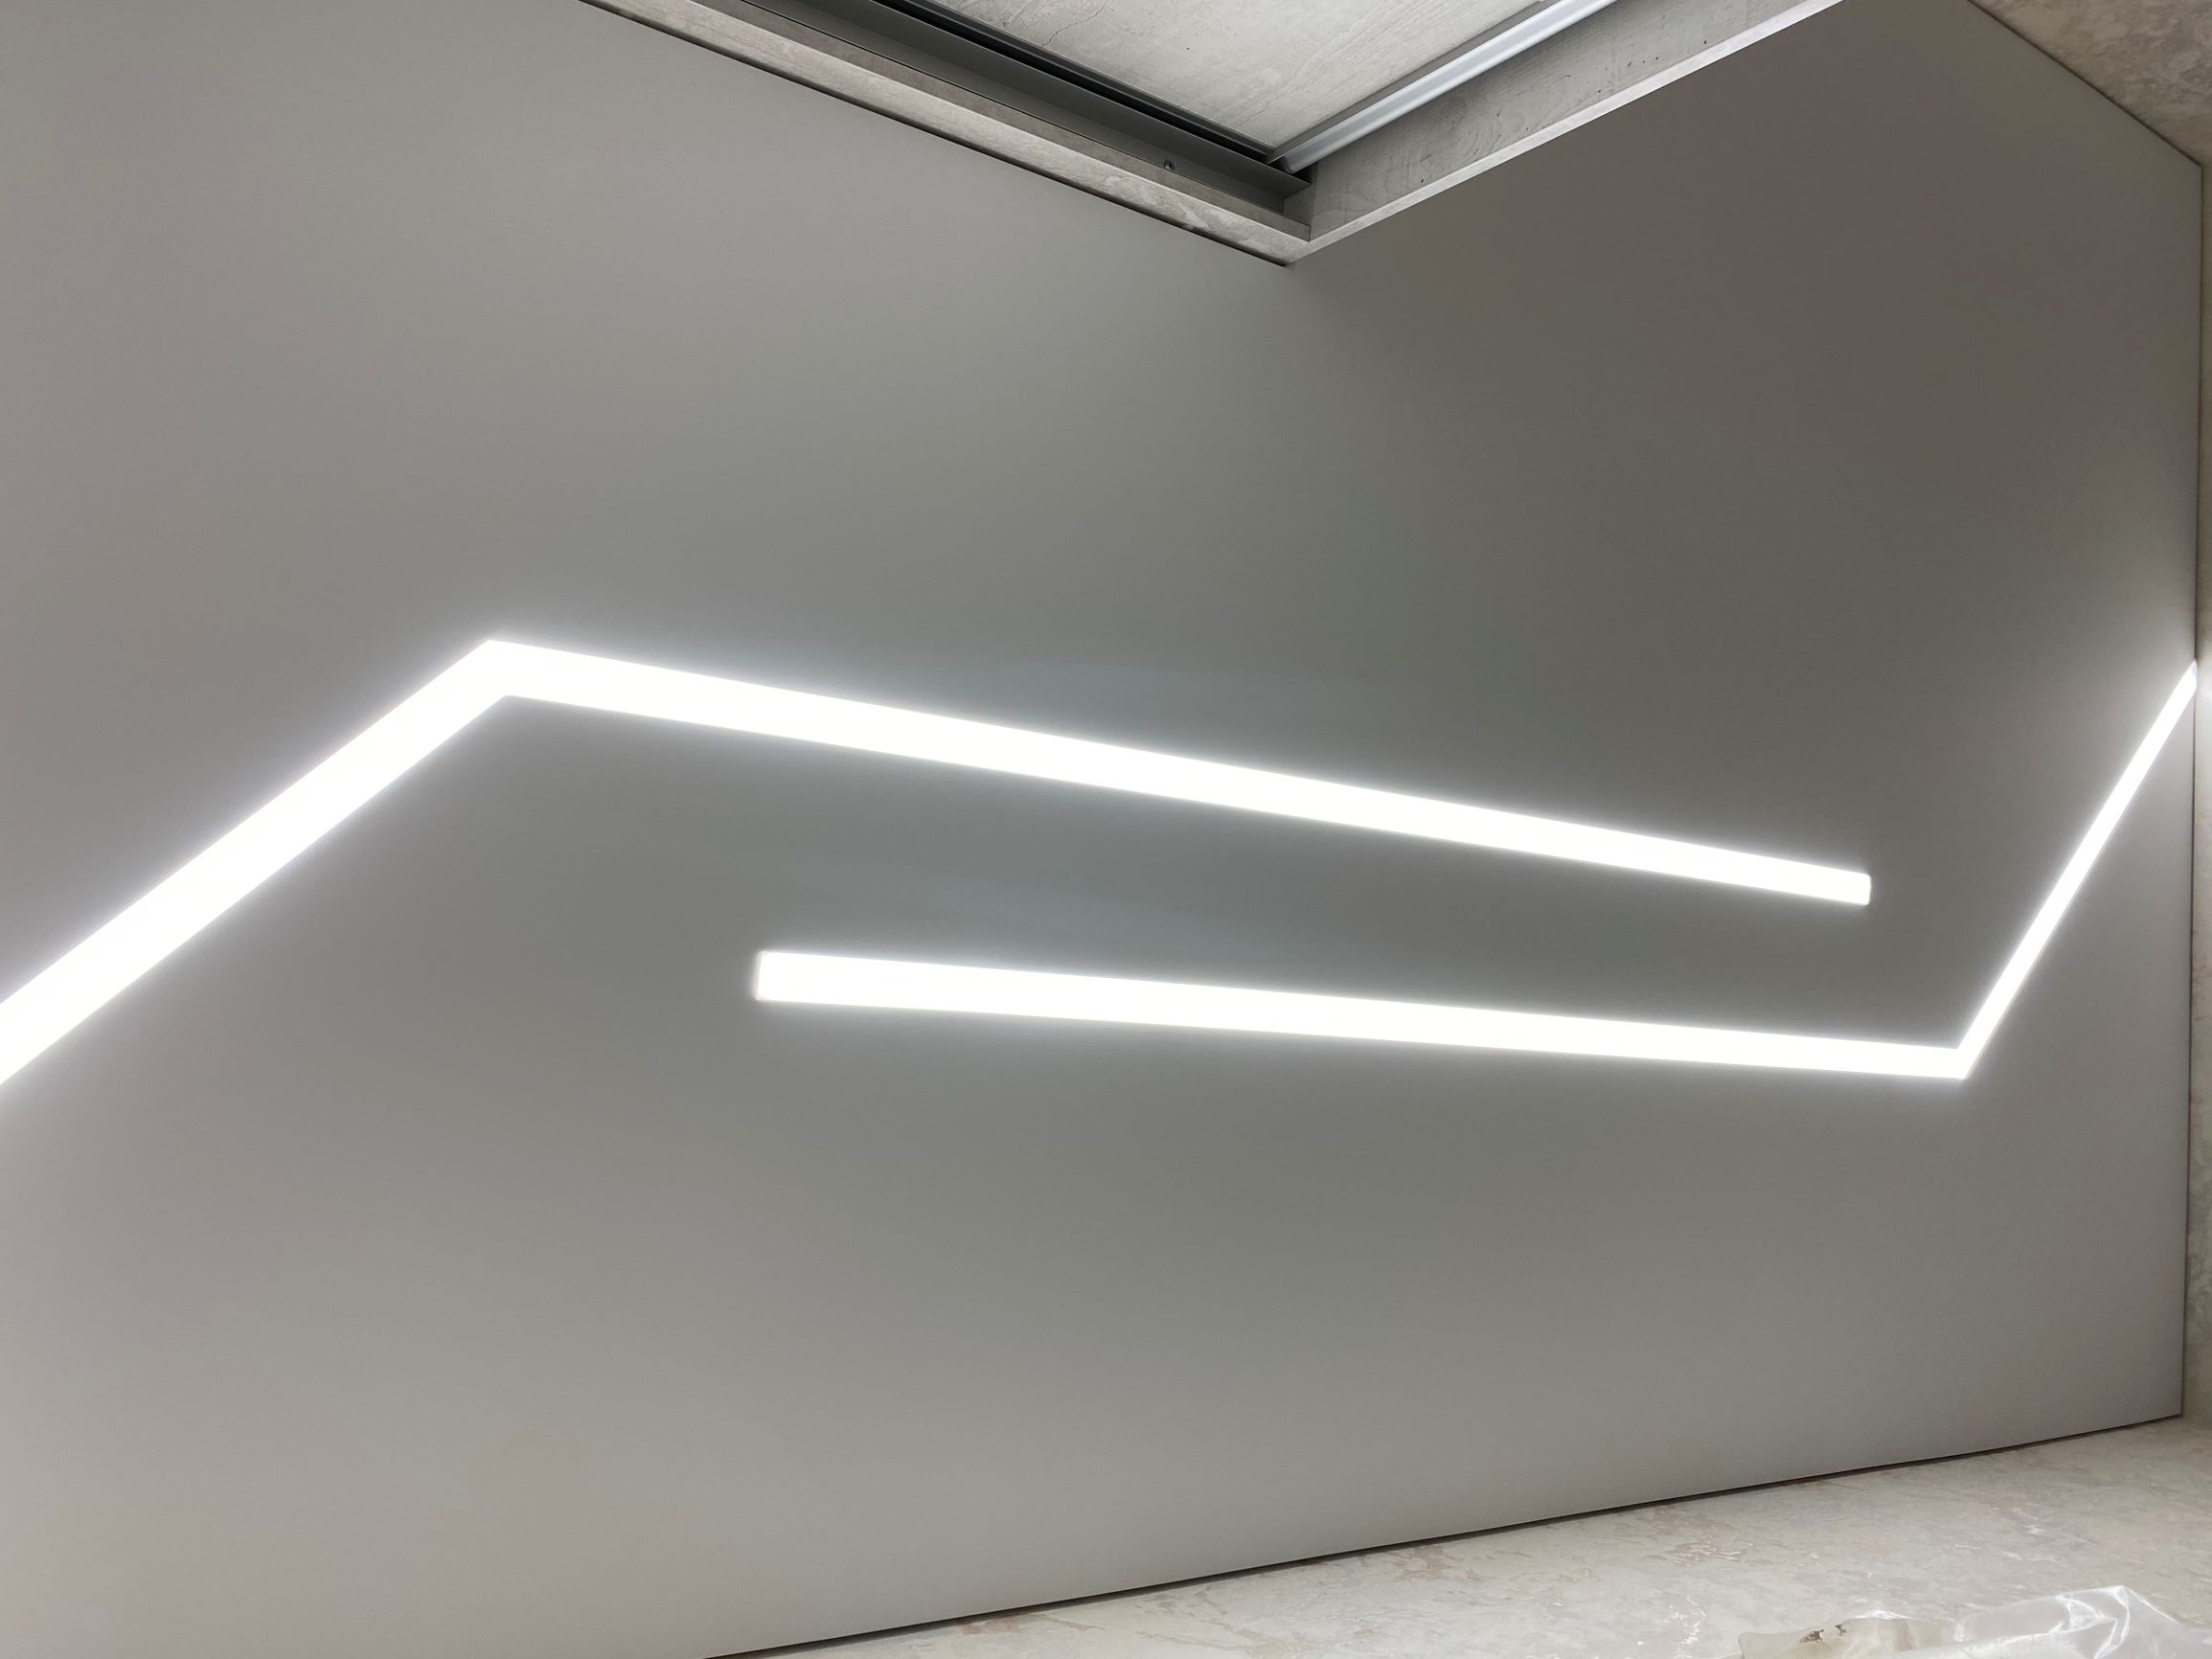 Натяжной потолок со световыми линиями от ПоТолковой компании